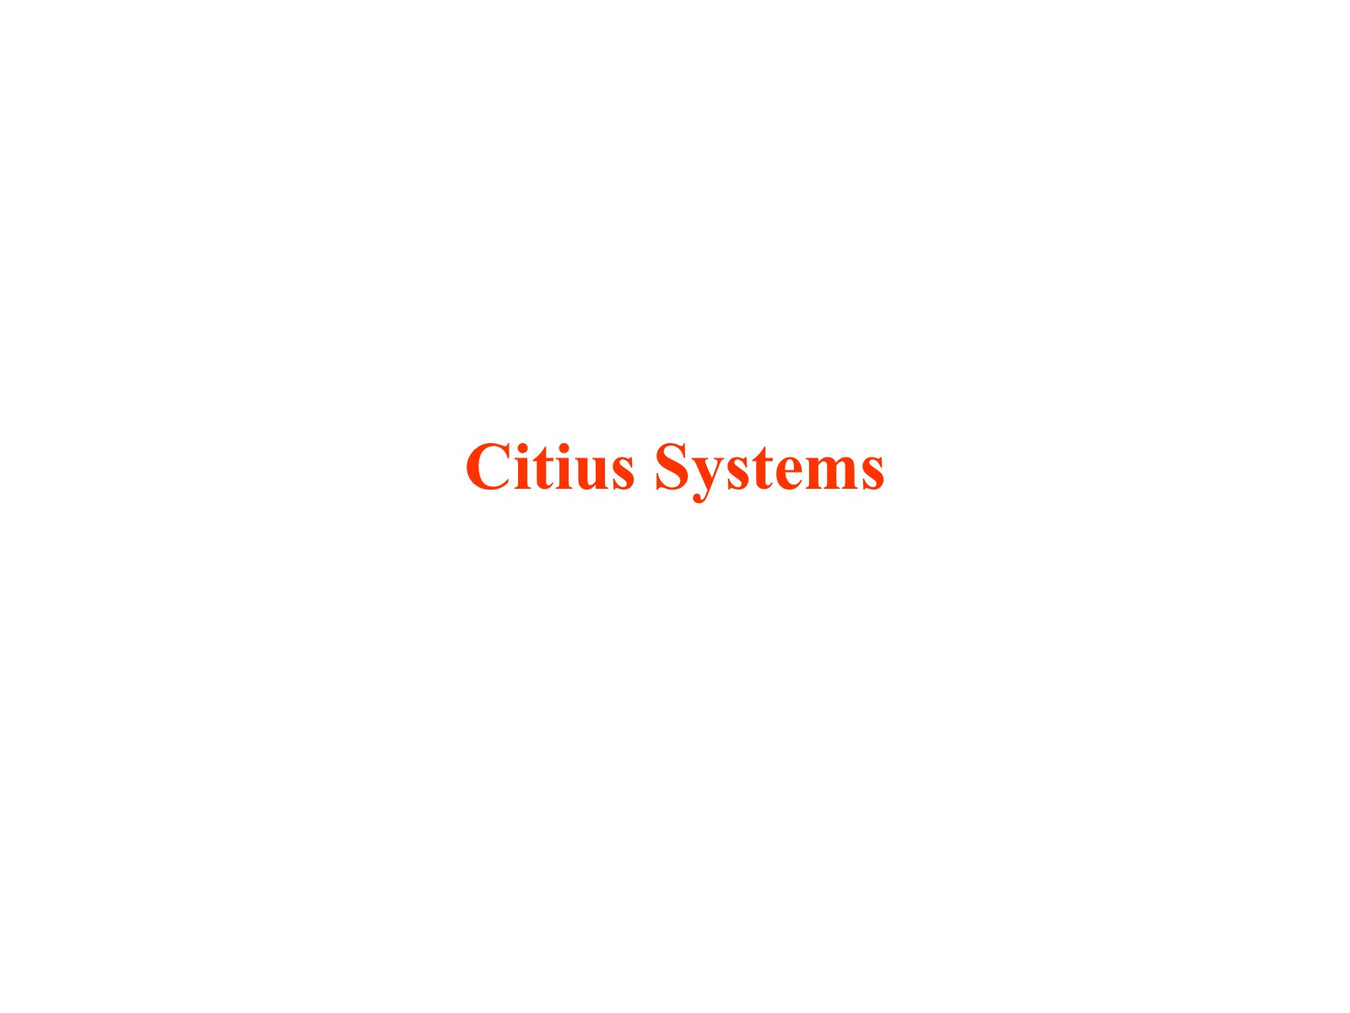 Citius Systems